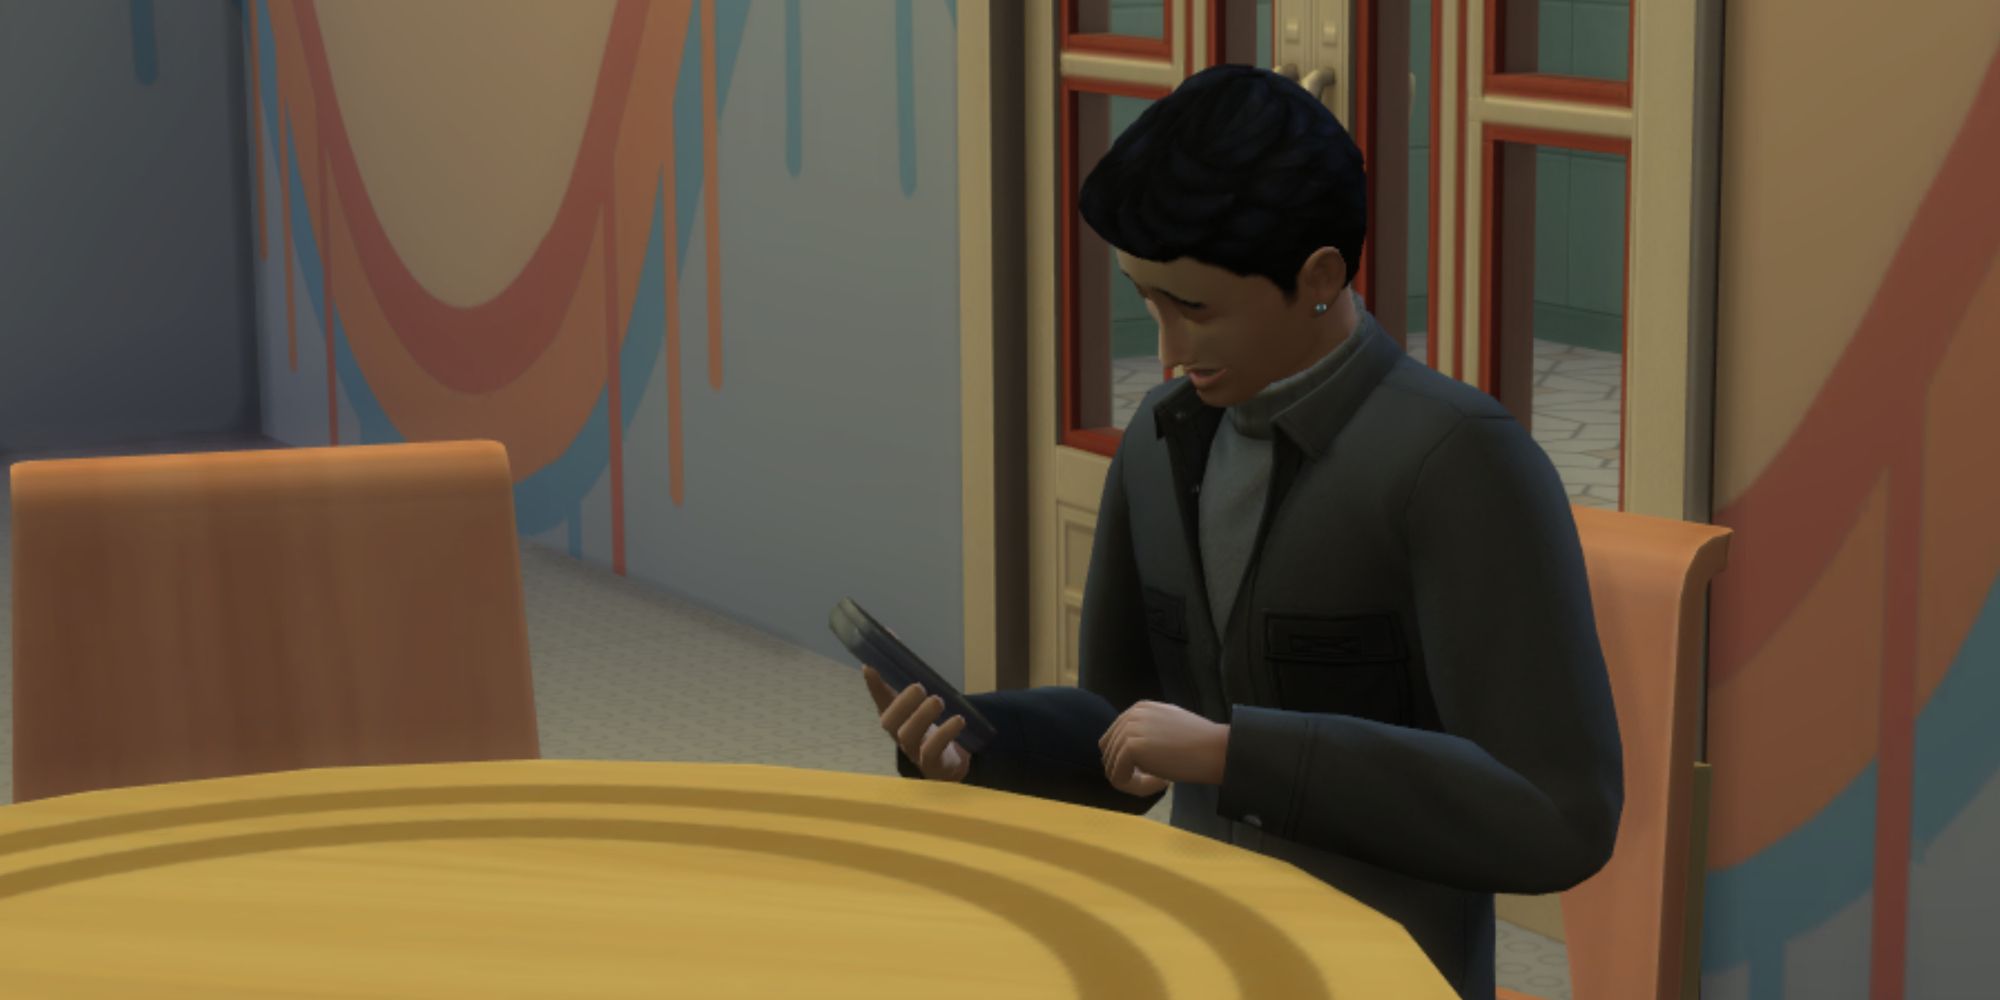 Sims 4 - Teen Sim Looking At Phone in Copperdale High School